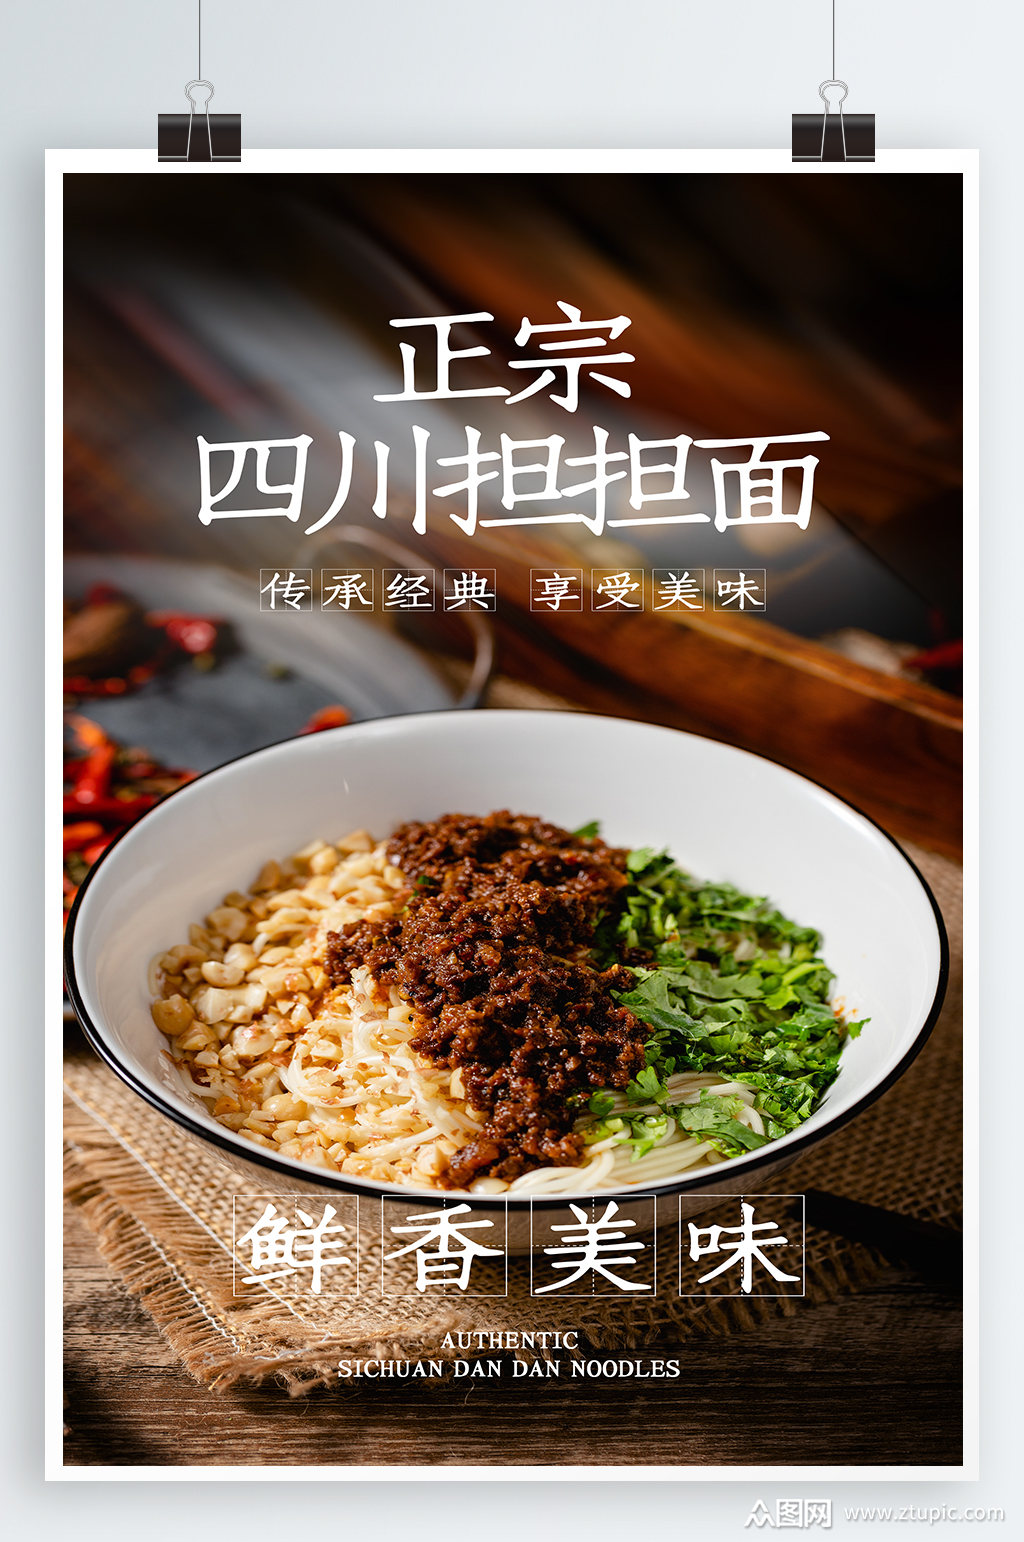 担担面美食海报素材免费下载,本作品是由紫妍上传的原创平面广告素材